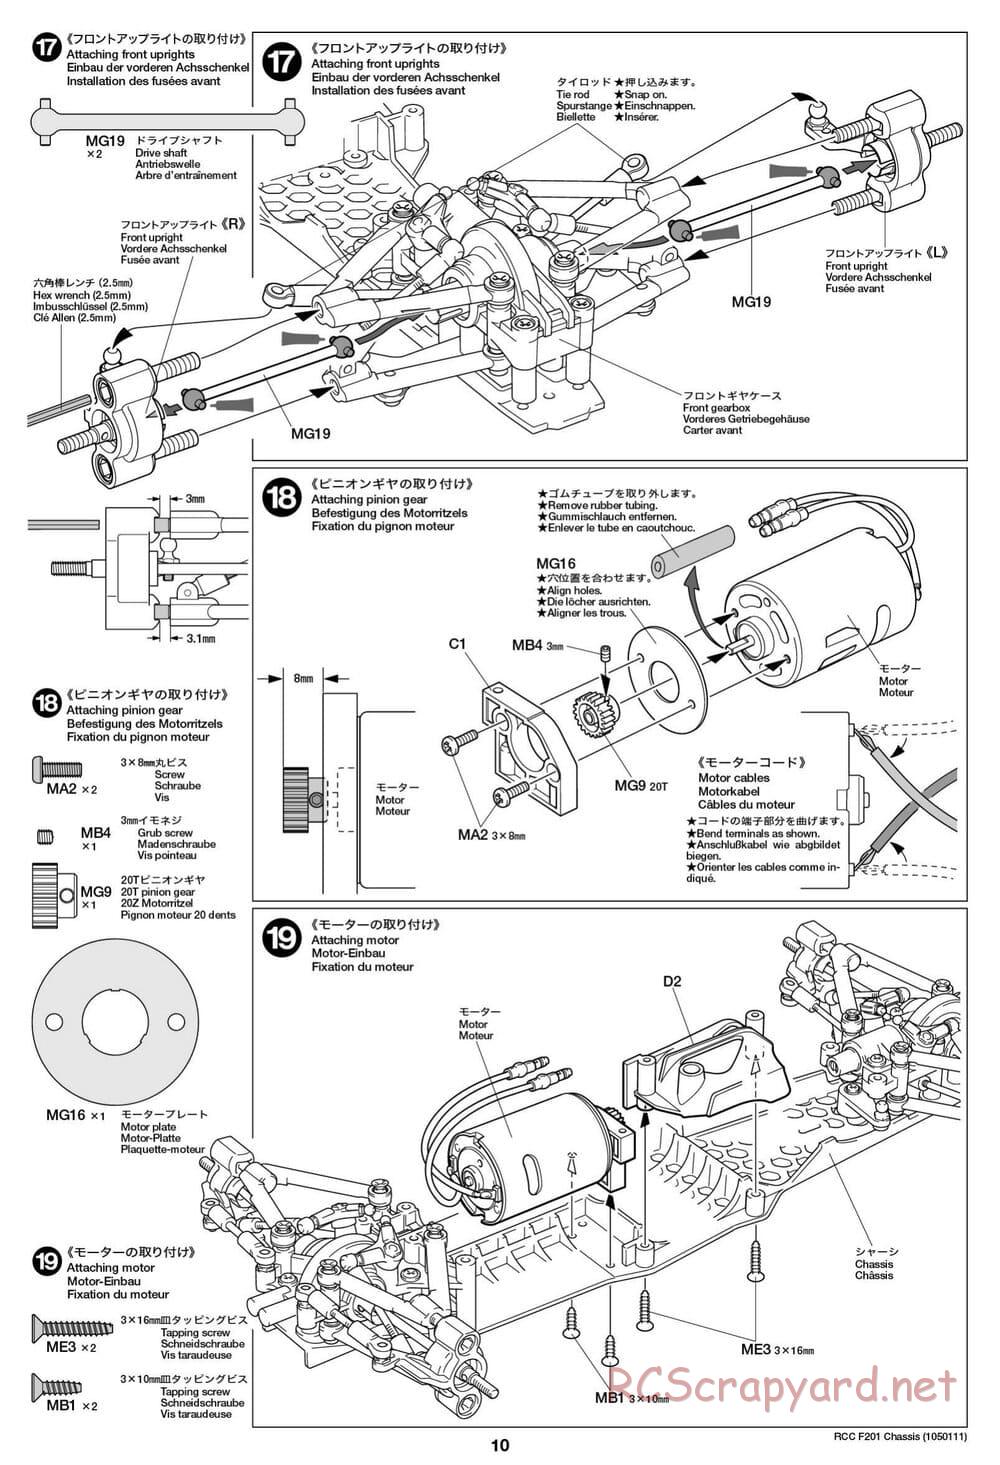 Tamiya - F201 Chassis - Manual - Page 10